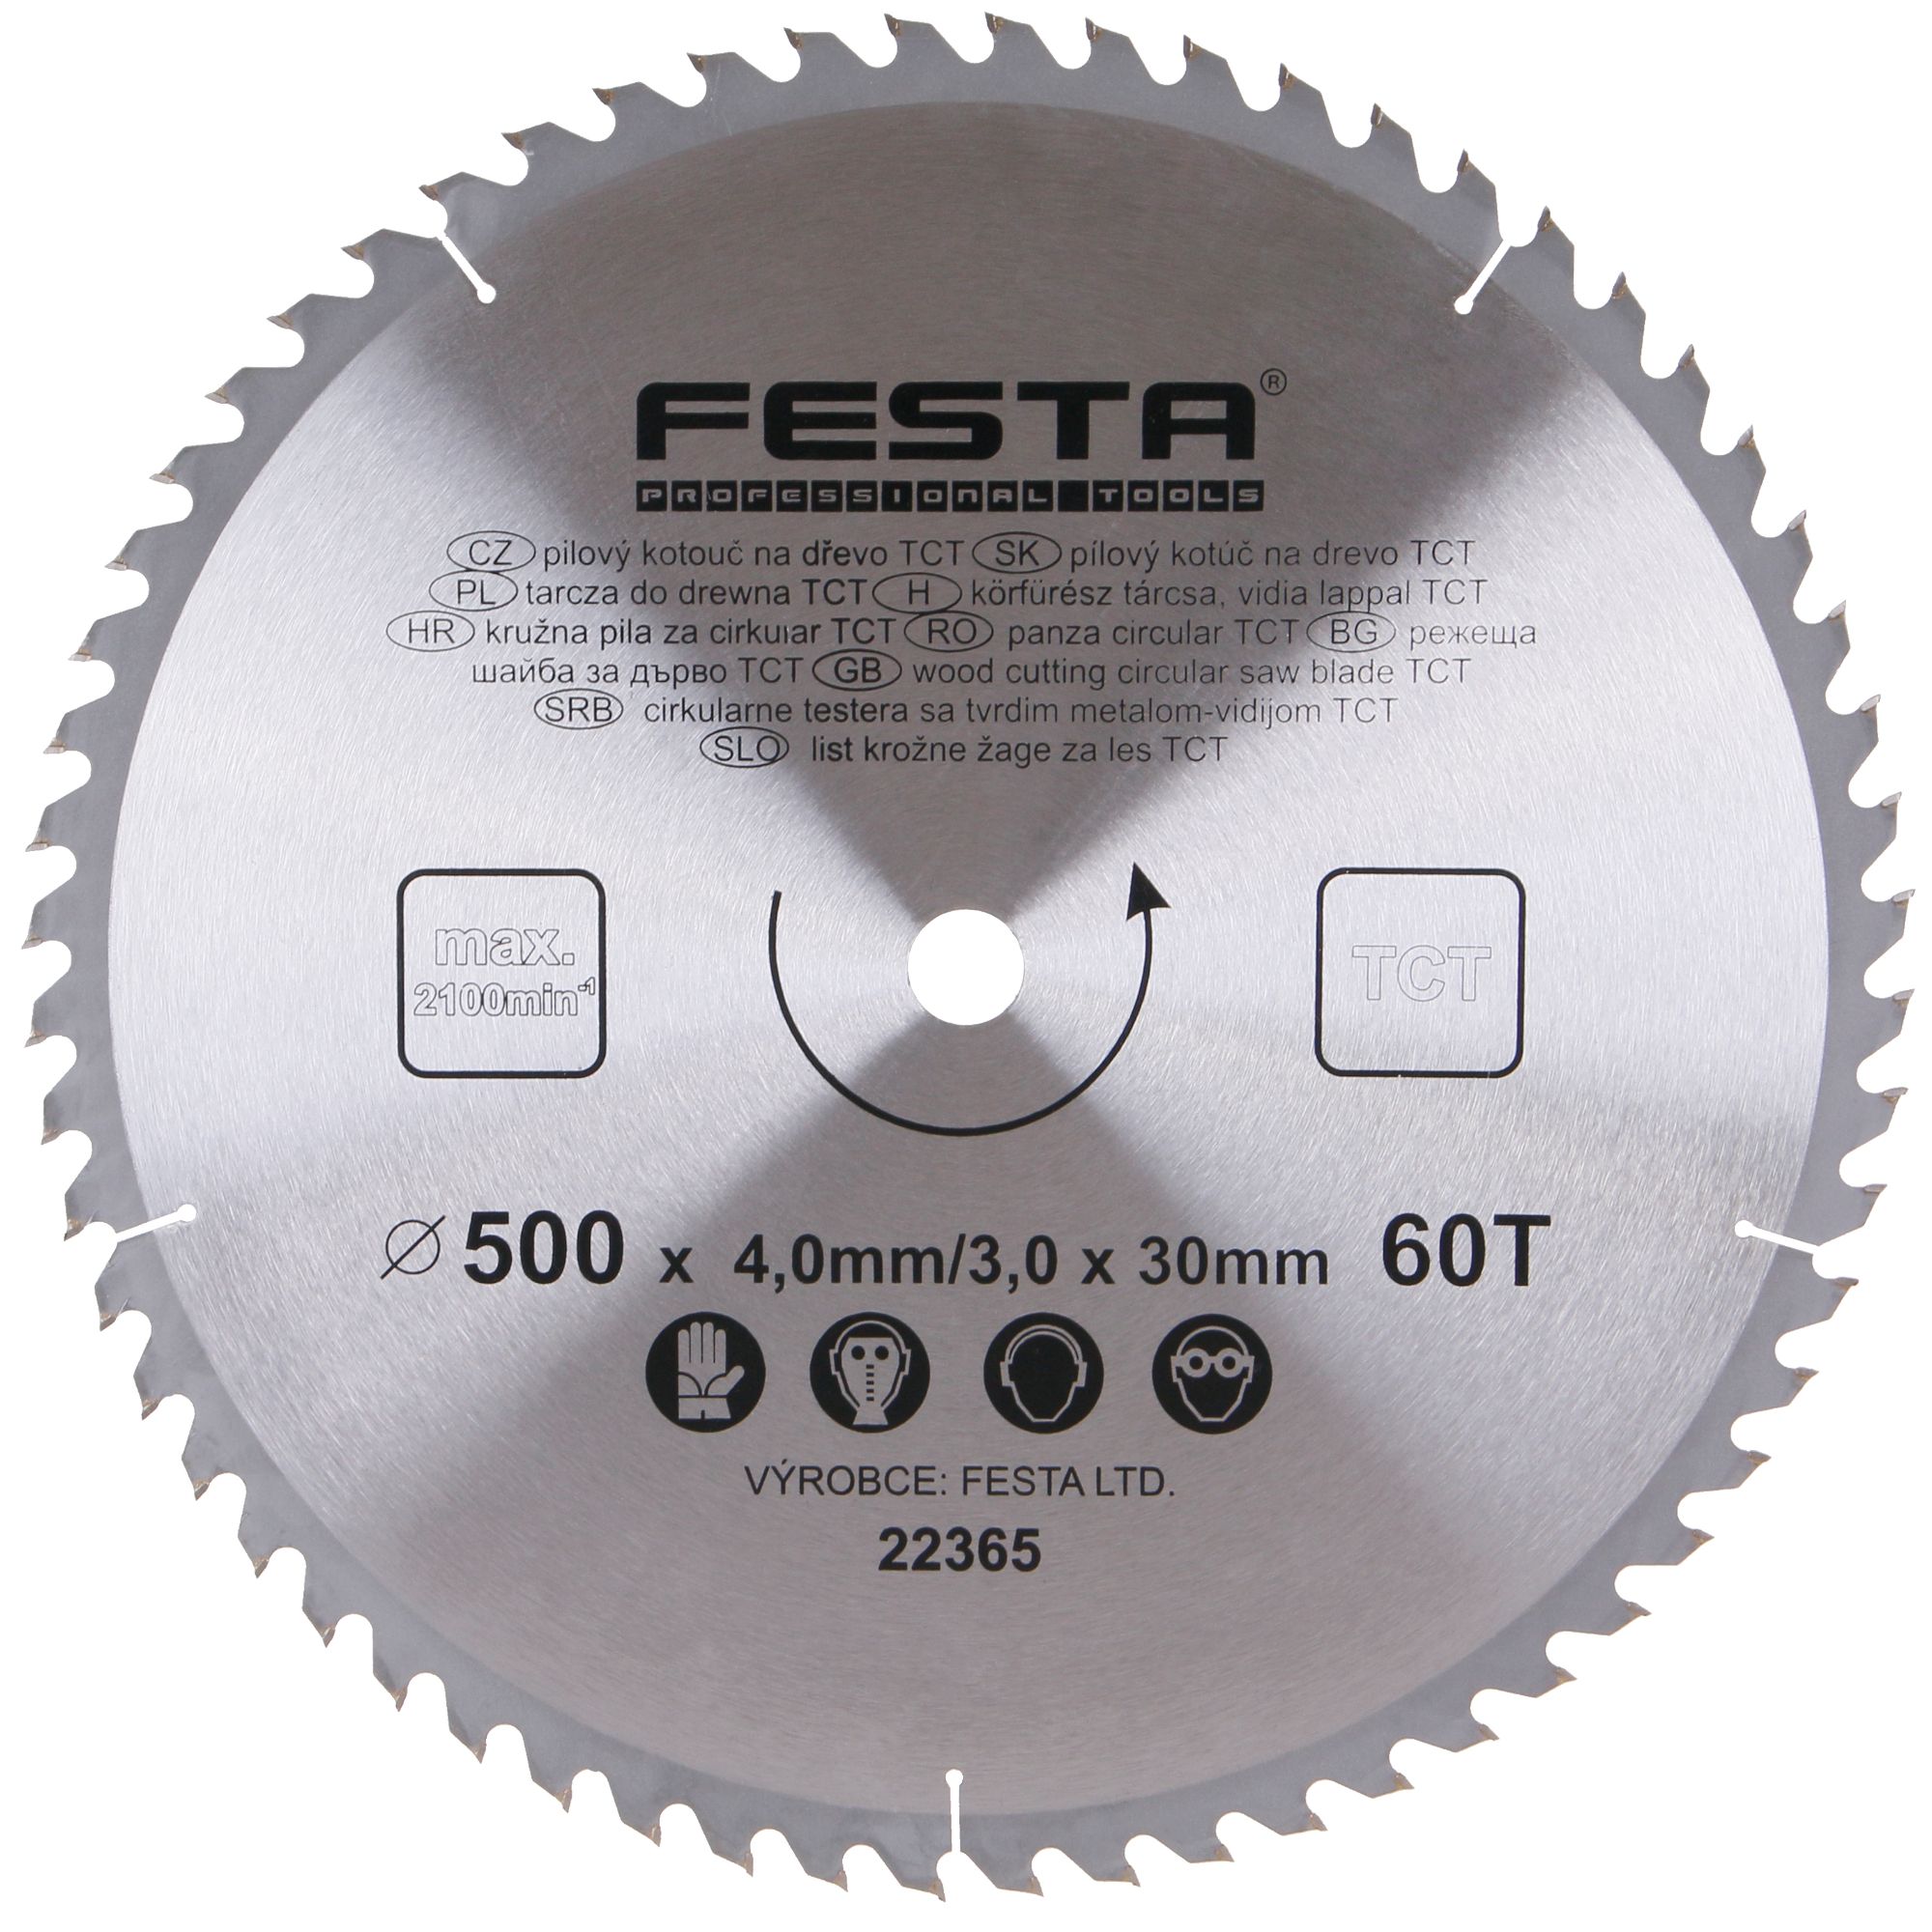 FESTA 22365 Kotouč pilový, na dřevo, 500mm, 60 zubů, 30mm, 4,0mm, TCT